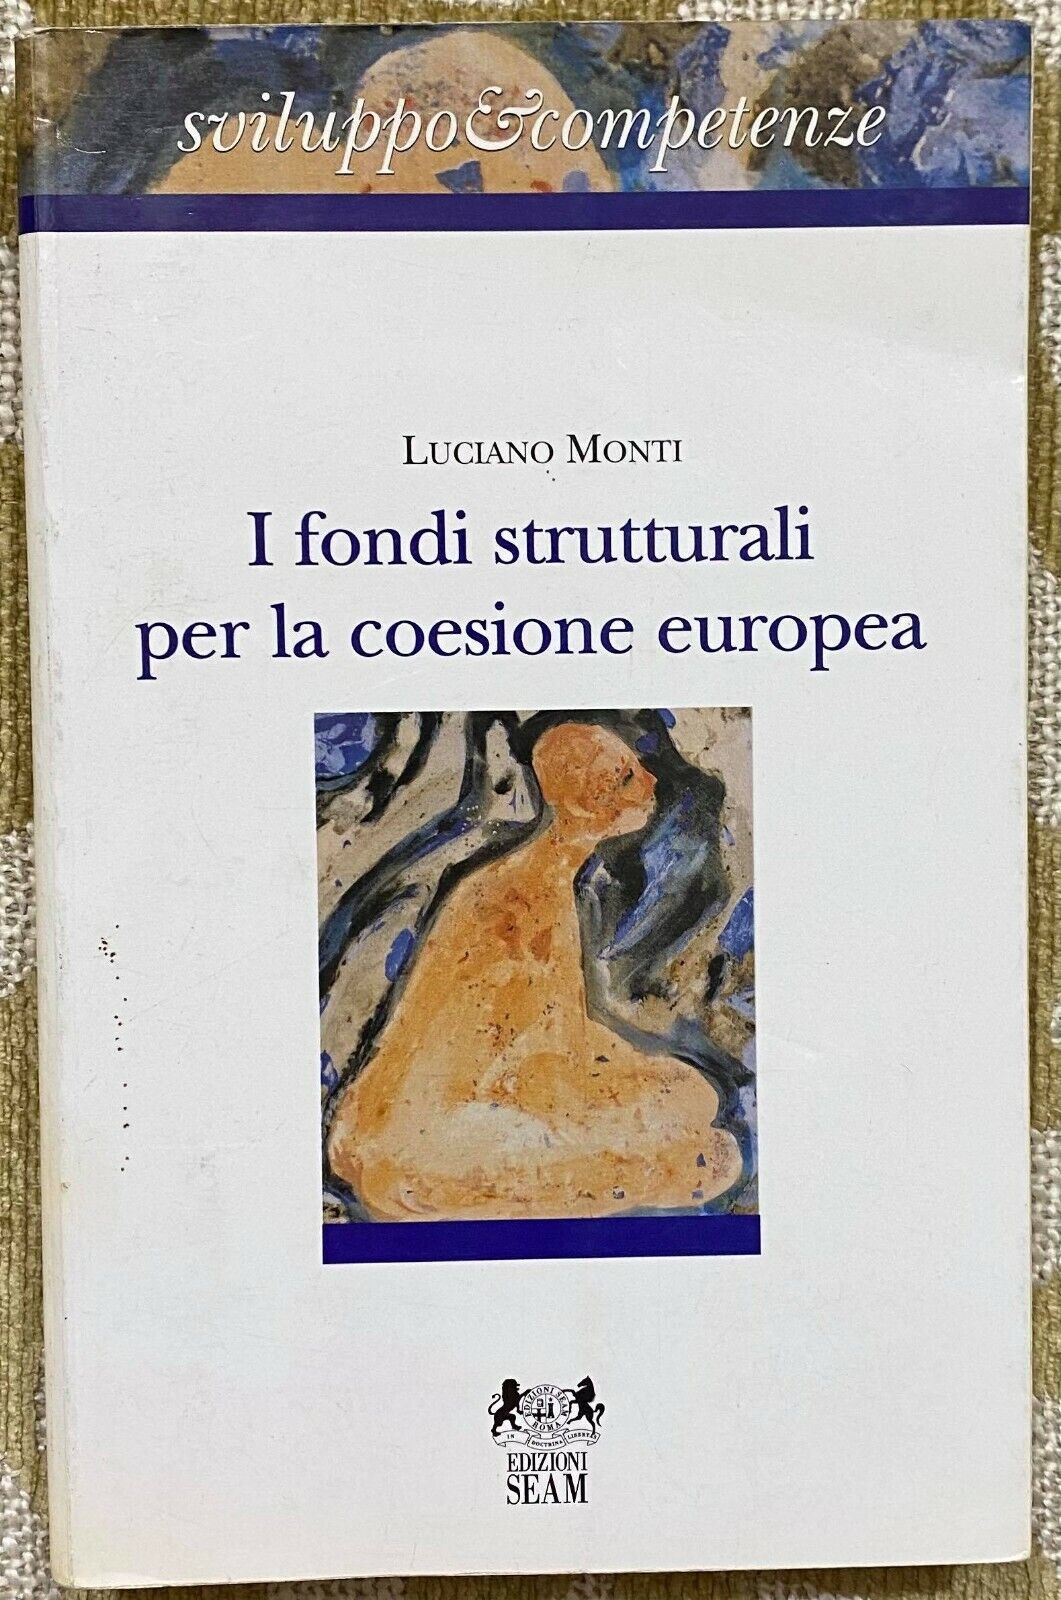 I fondi strutturali per la coesione europea - Luciano Monti - Seam - 1996 - M